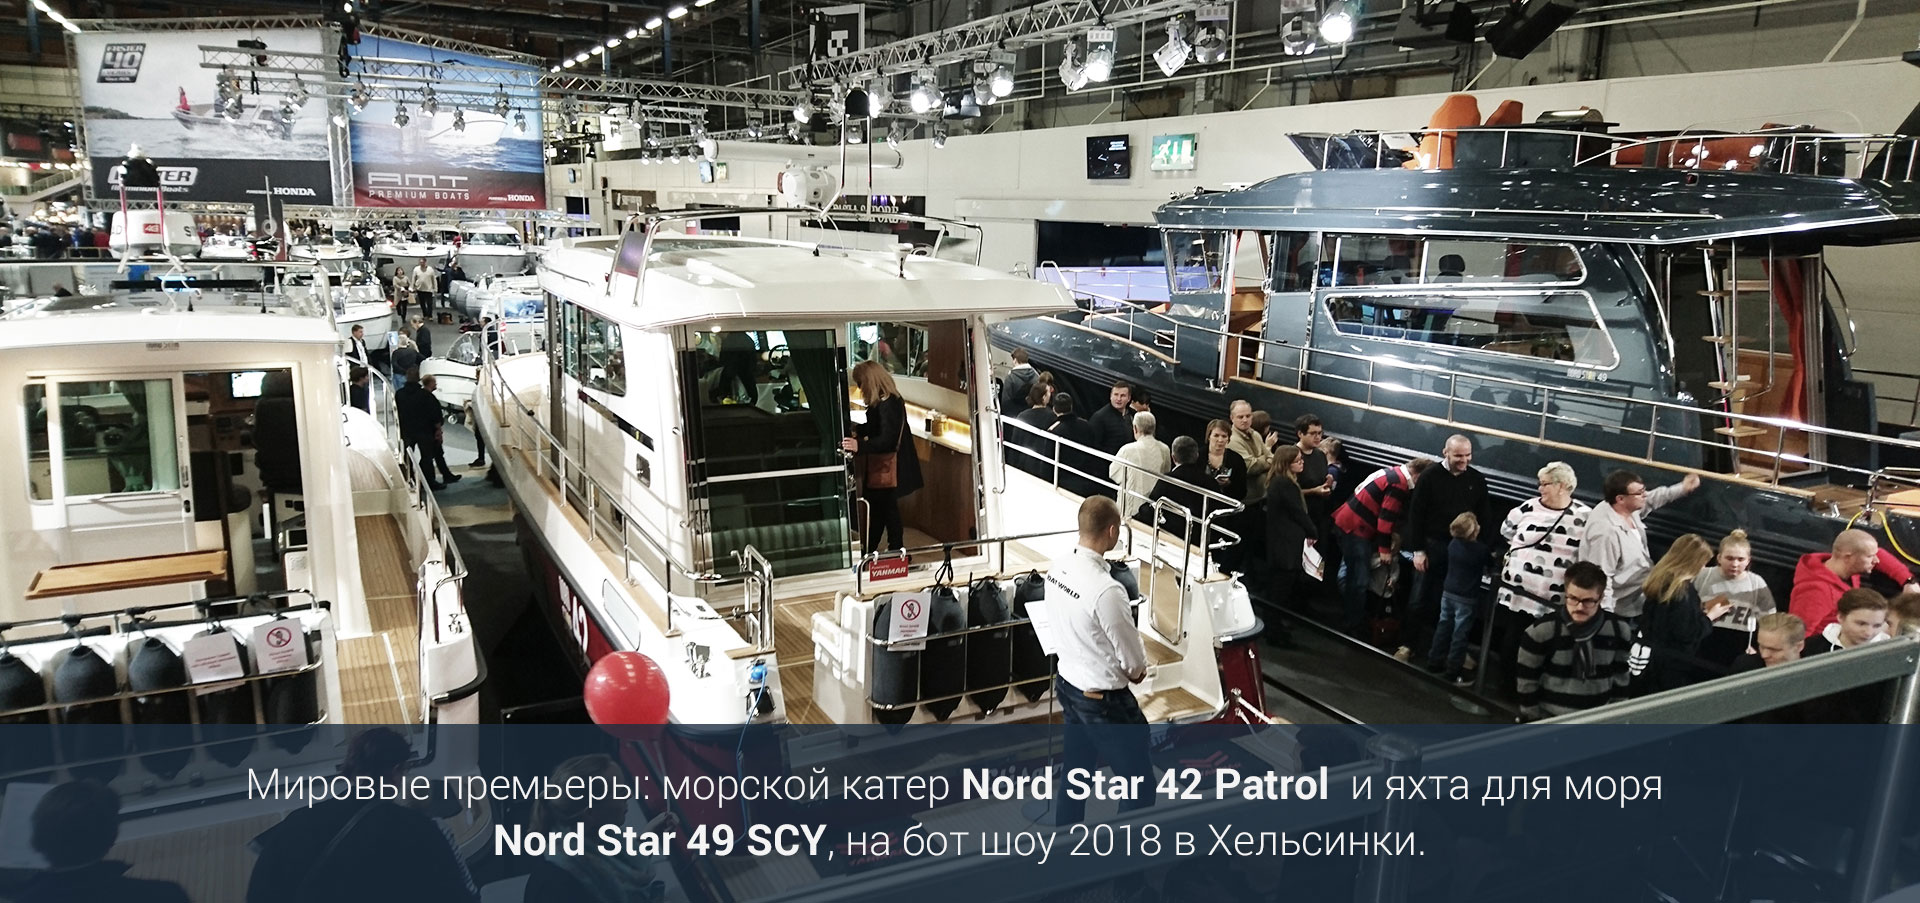 Мировые премьеры: морской катер Nord Star 42 Patrol и яхта для моря Nord Star 49 SCY